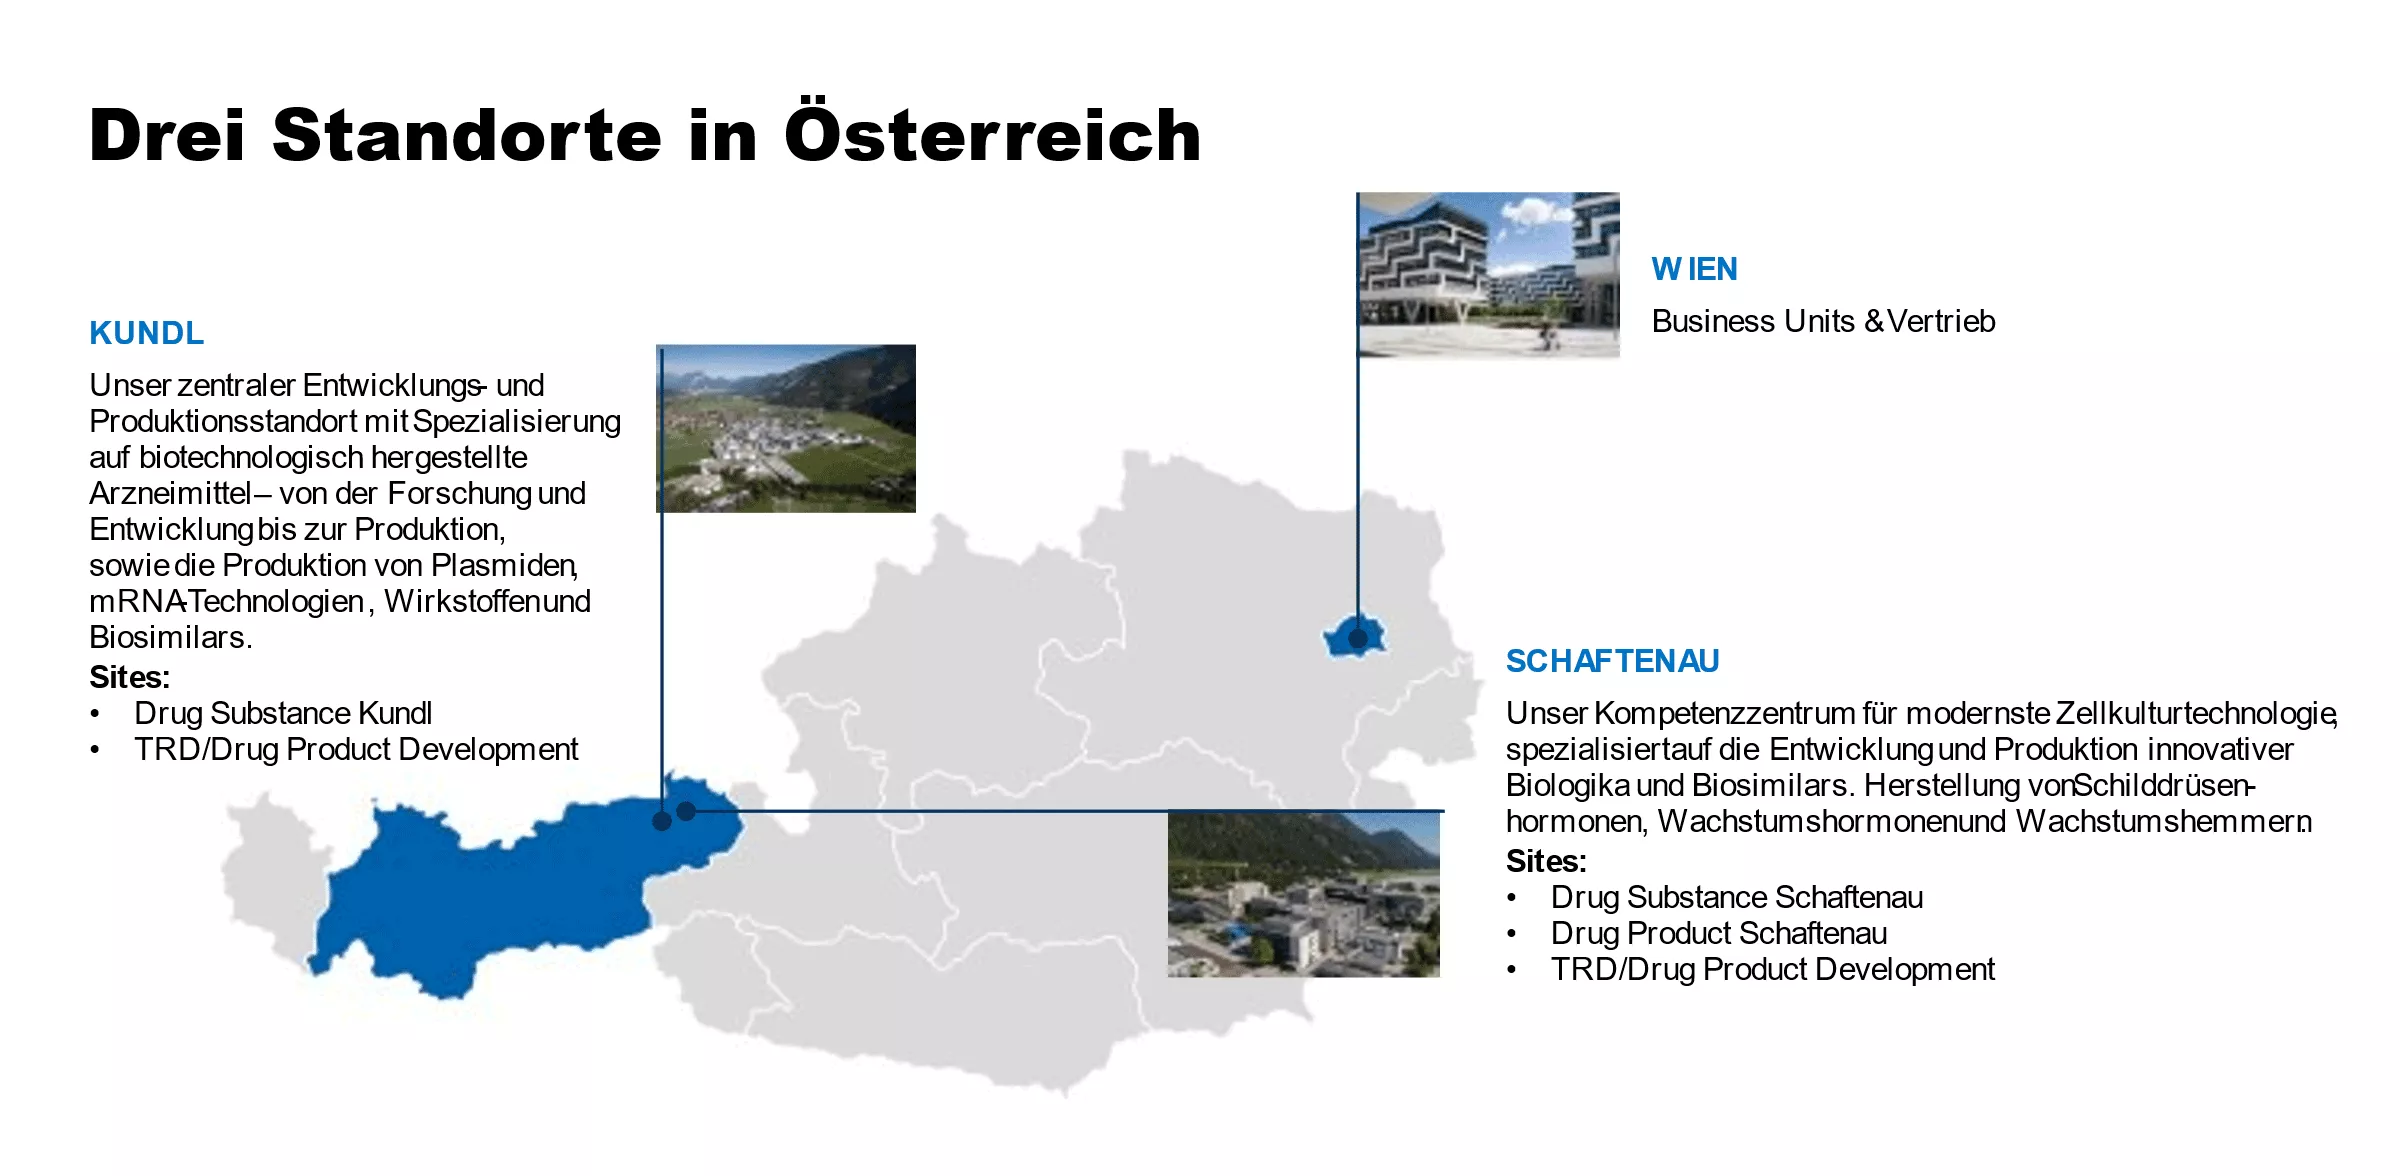 Drei Novartis-Standorte in Österreich